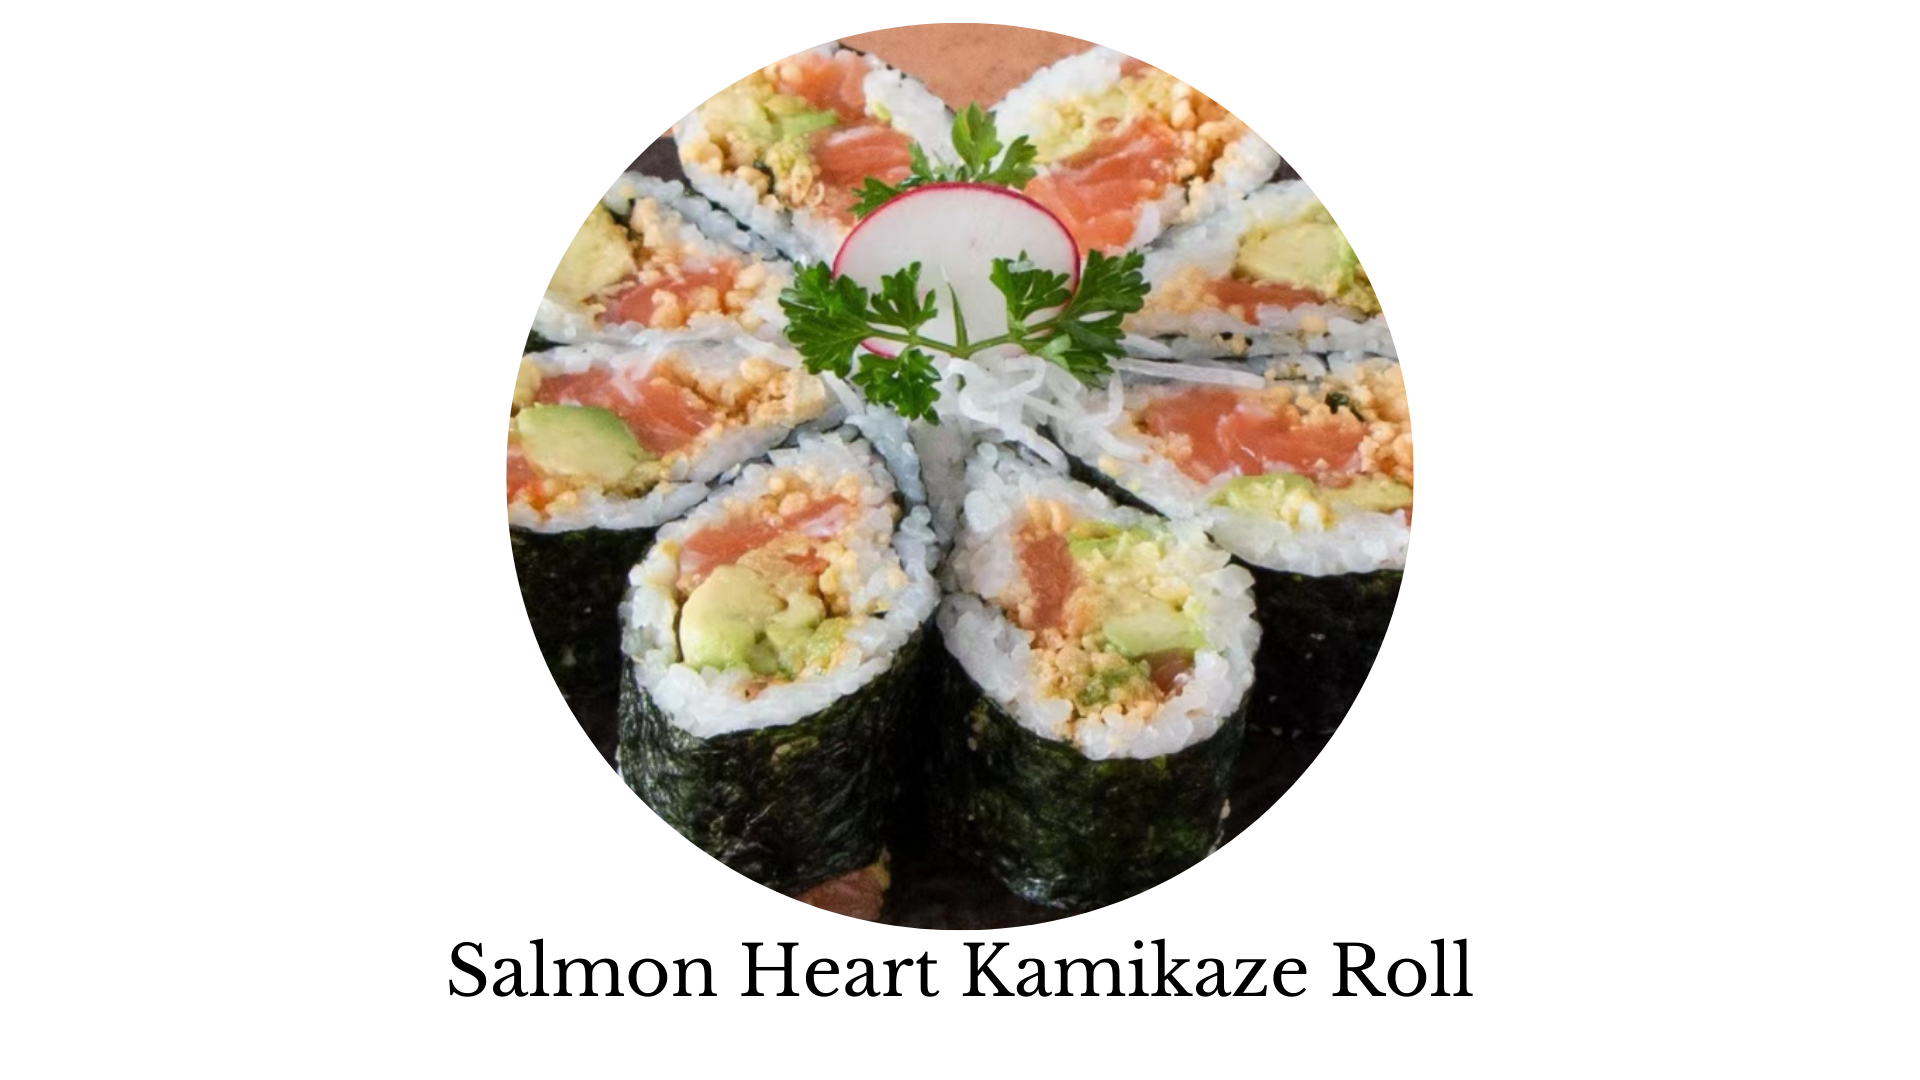 salmon heart kamikaze roll, sushi, sashimi, sushi near me, sushi places near me, best sushi near me, sushi rice